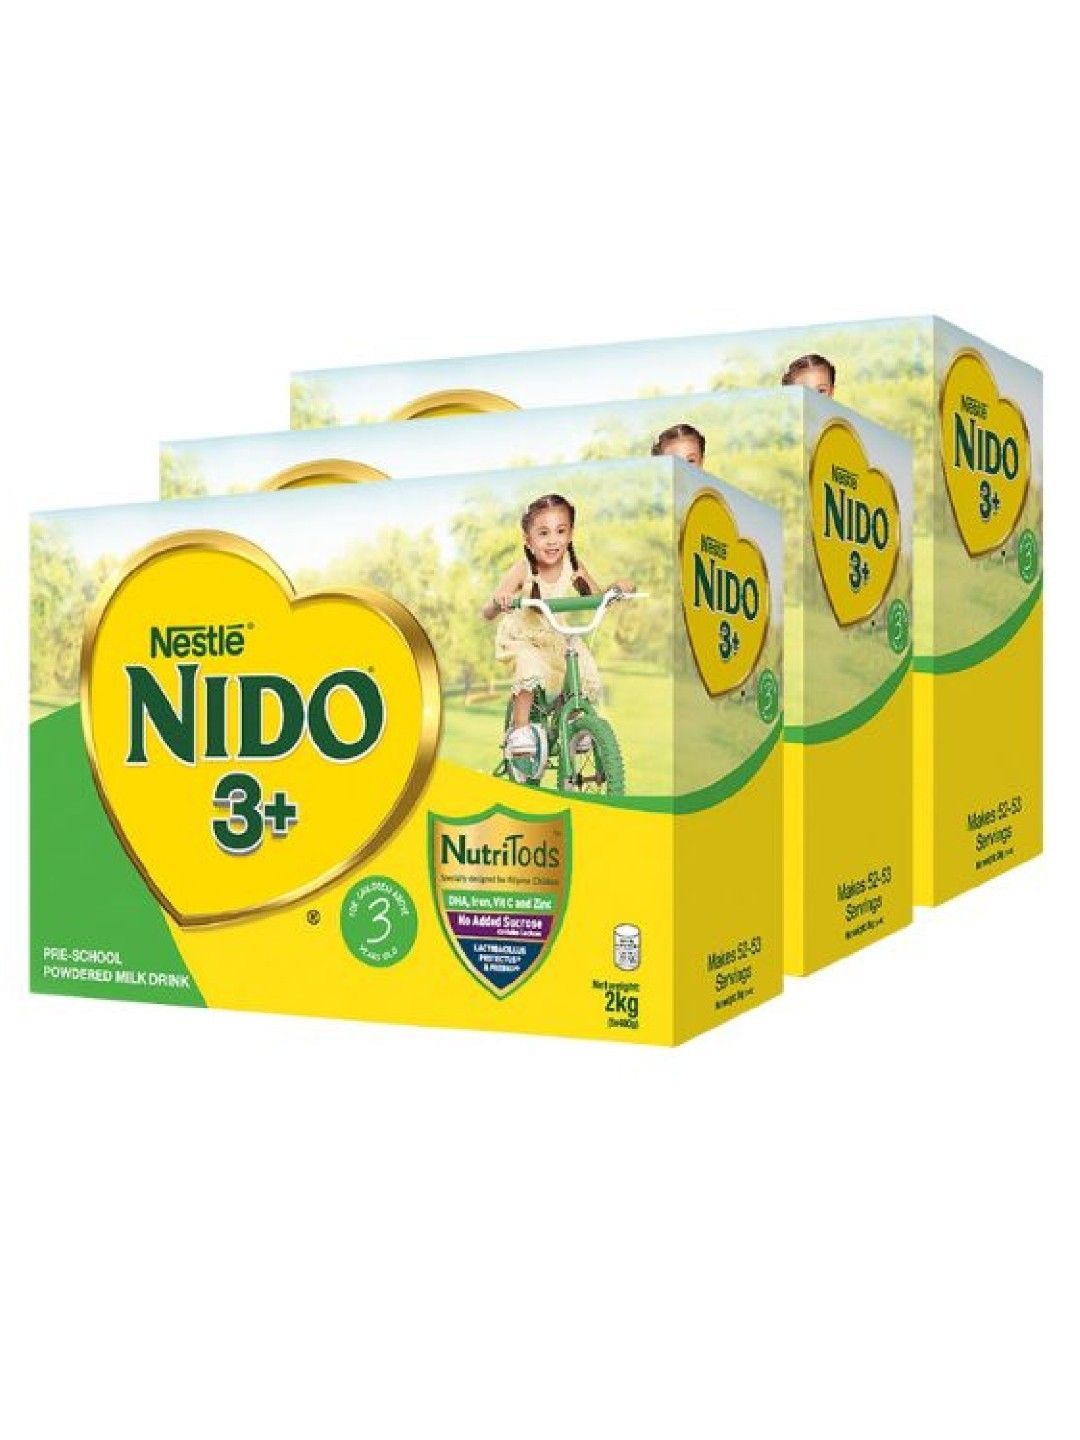 Nido 3+ NIDO® 3+ Powdered Milk Drink For Pre-Schoolers Above 3 Years (2kg) Bundle of 3